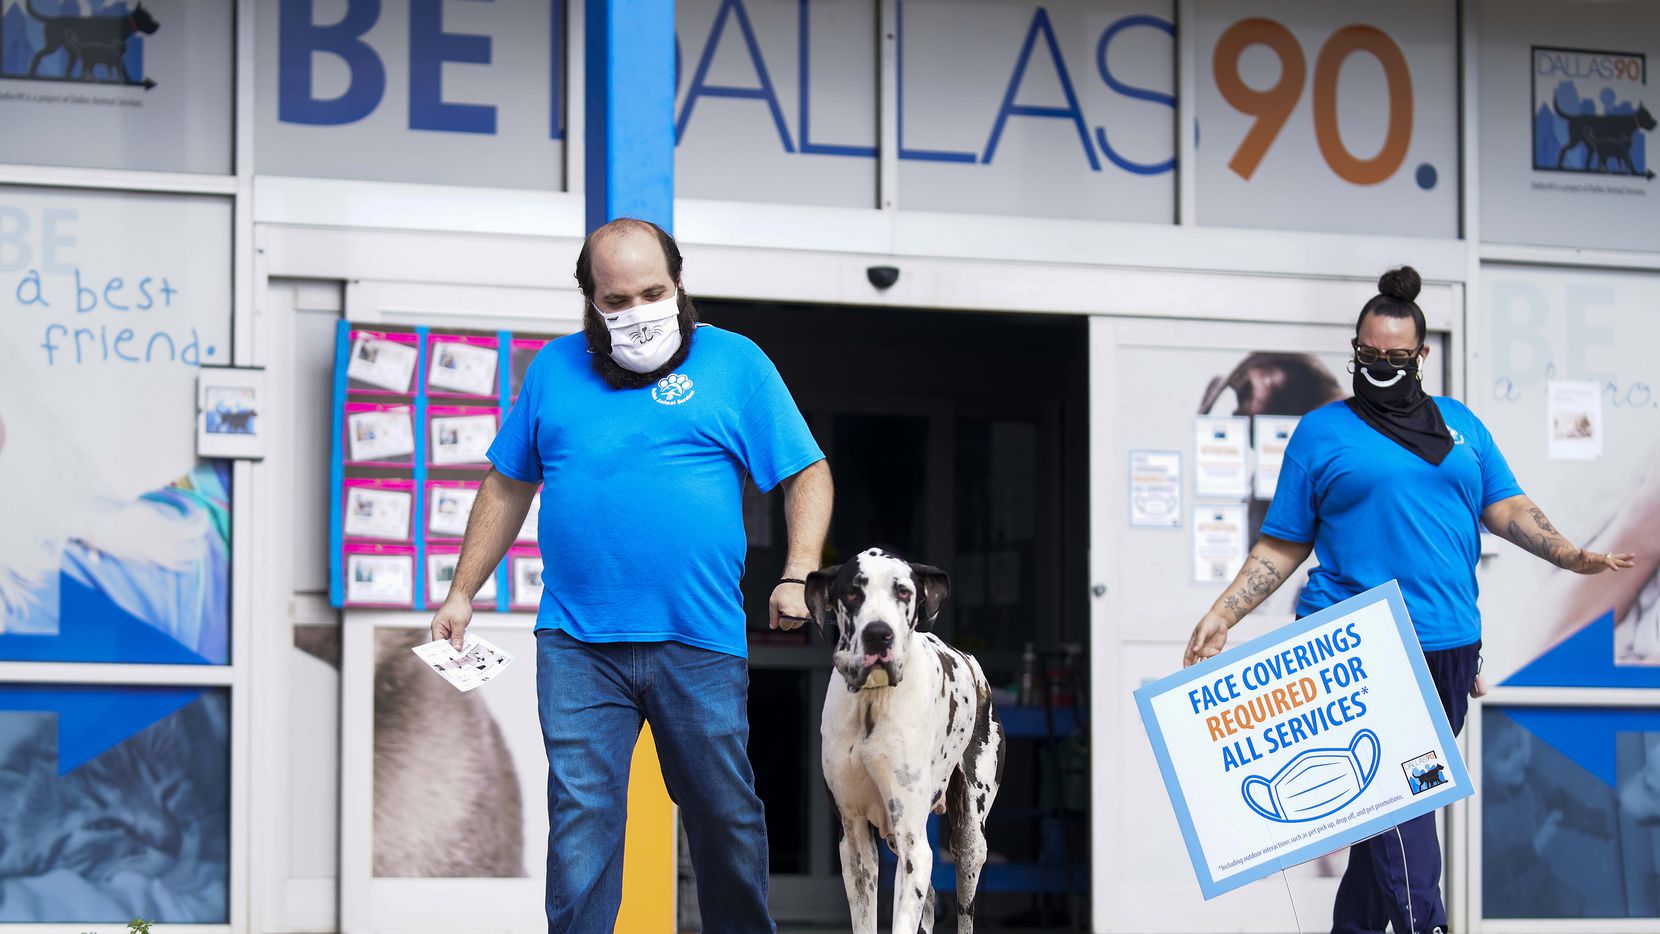 El refugio de animales Dallas Animal Services estará ofreciendo todo el mes de agosto...